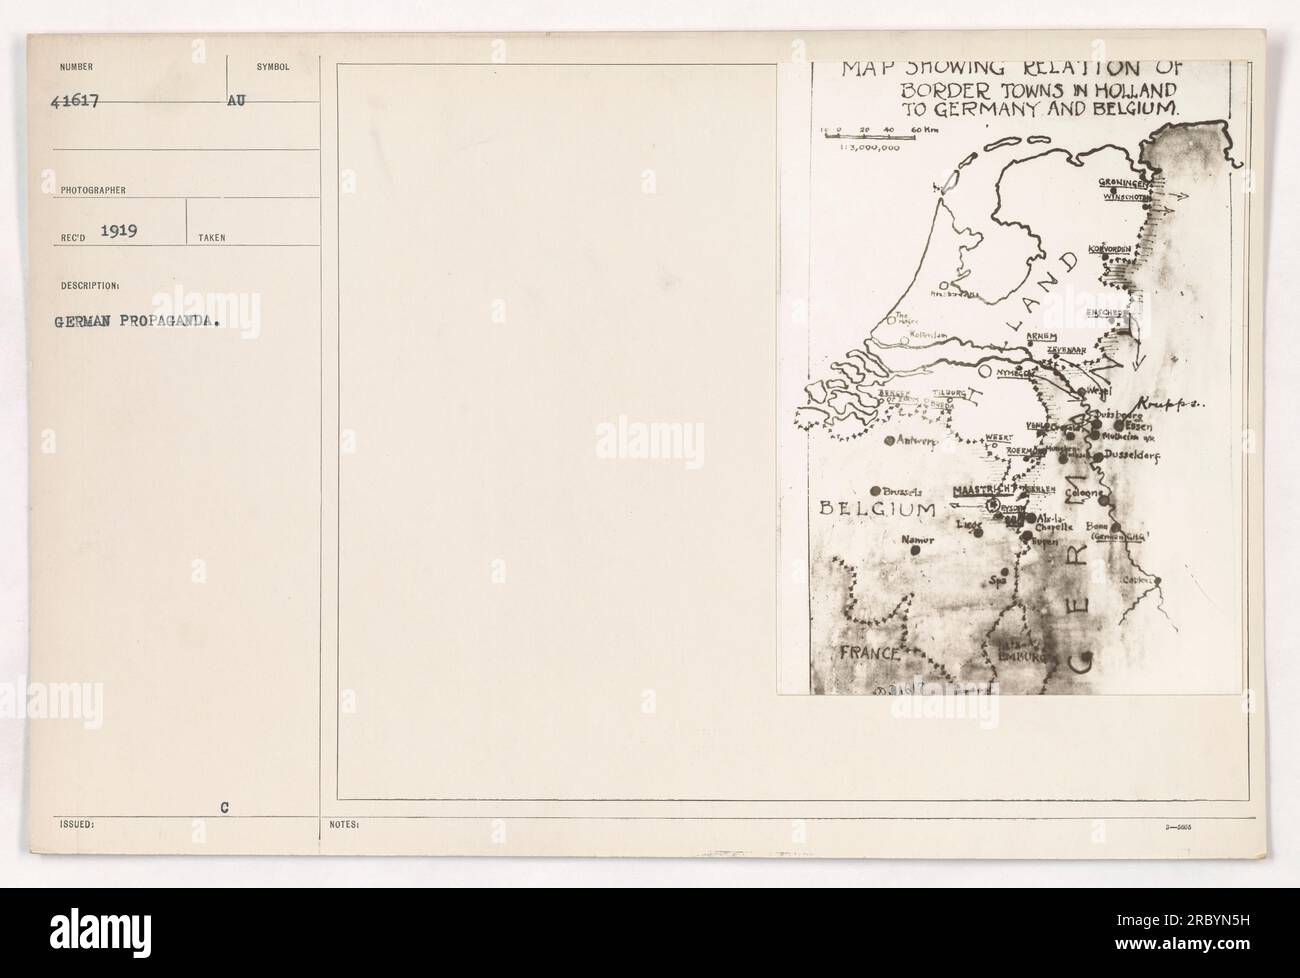 Das Foto wurde 1919 aufgenommen und zeigt eine deutsche Propagandakarte, die die Beziehung zwischen den niederländischen Grenzstädten zu Deutschland und Belgien detailliert beschreibt. Auf der Karte werden die Orte und die Nähe verschiedener Städte wie Menen, Maastricht und Düsseldorf angezeigt. Der Maßstab der Karte ist 1:3.000.000. Stockfoto